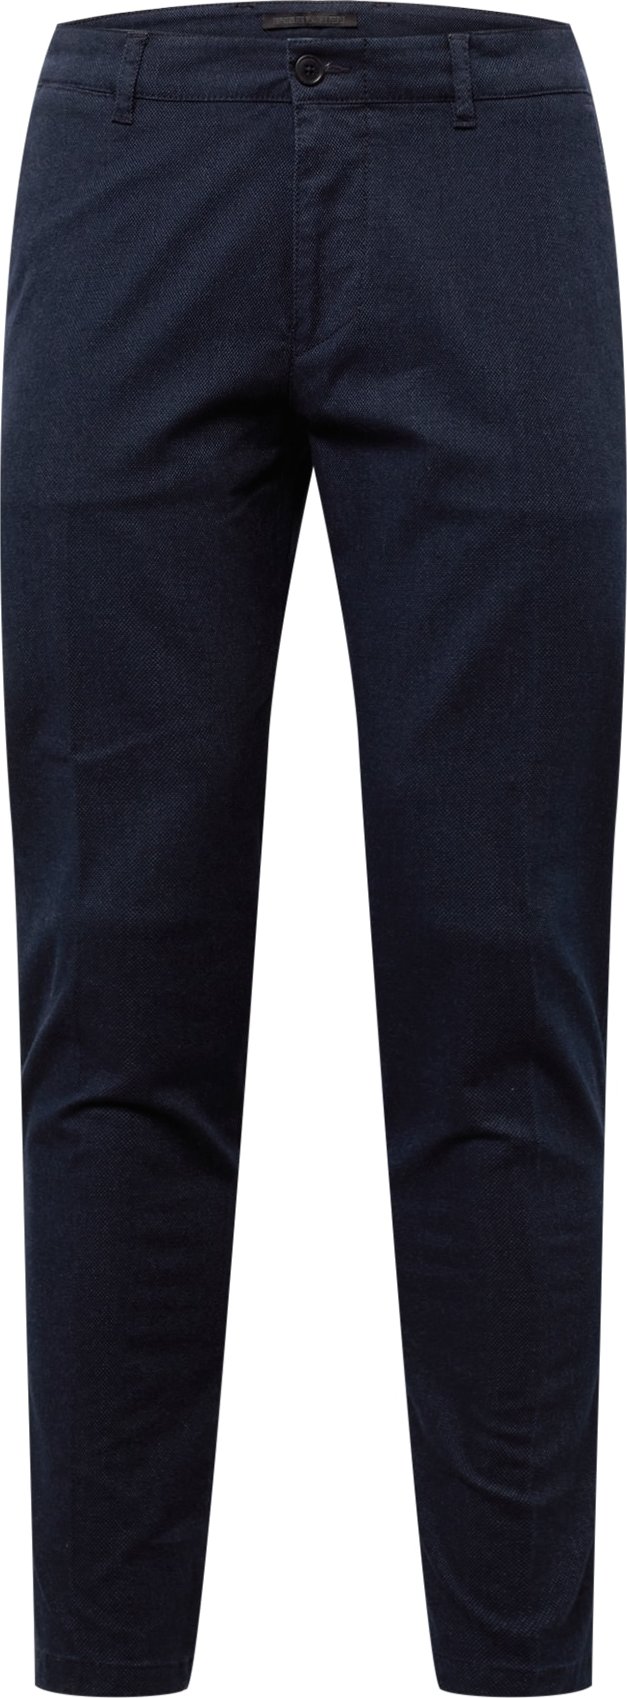 DRYKORN Chino kalhoty 'MAD' námořnická modř